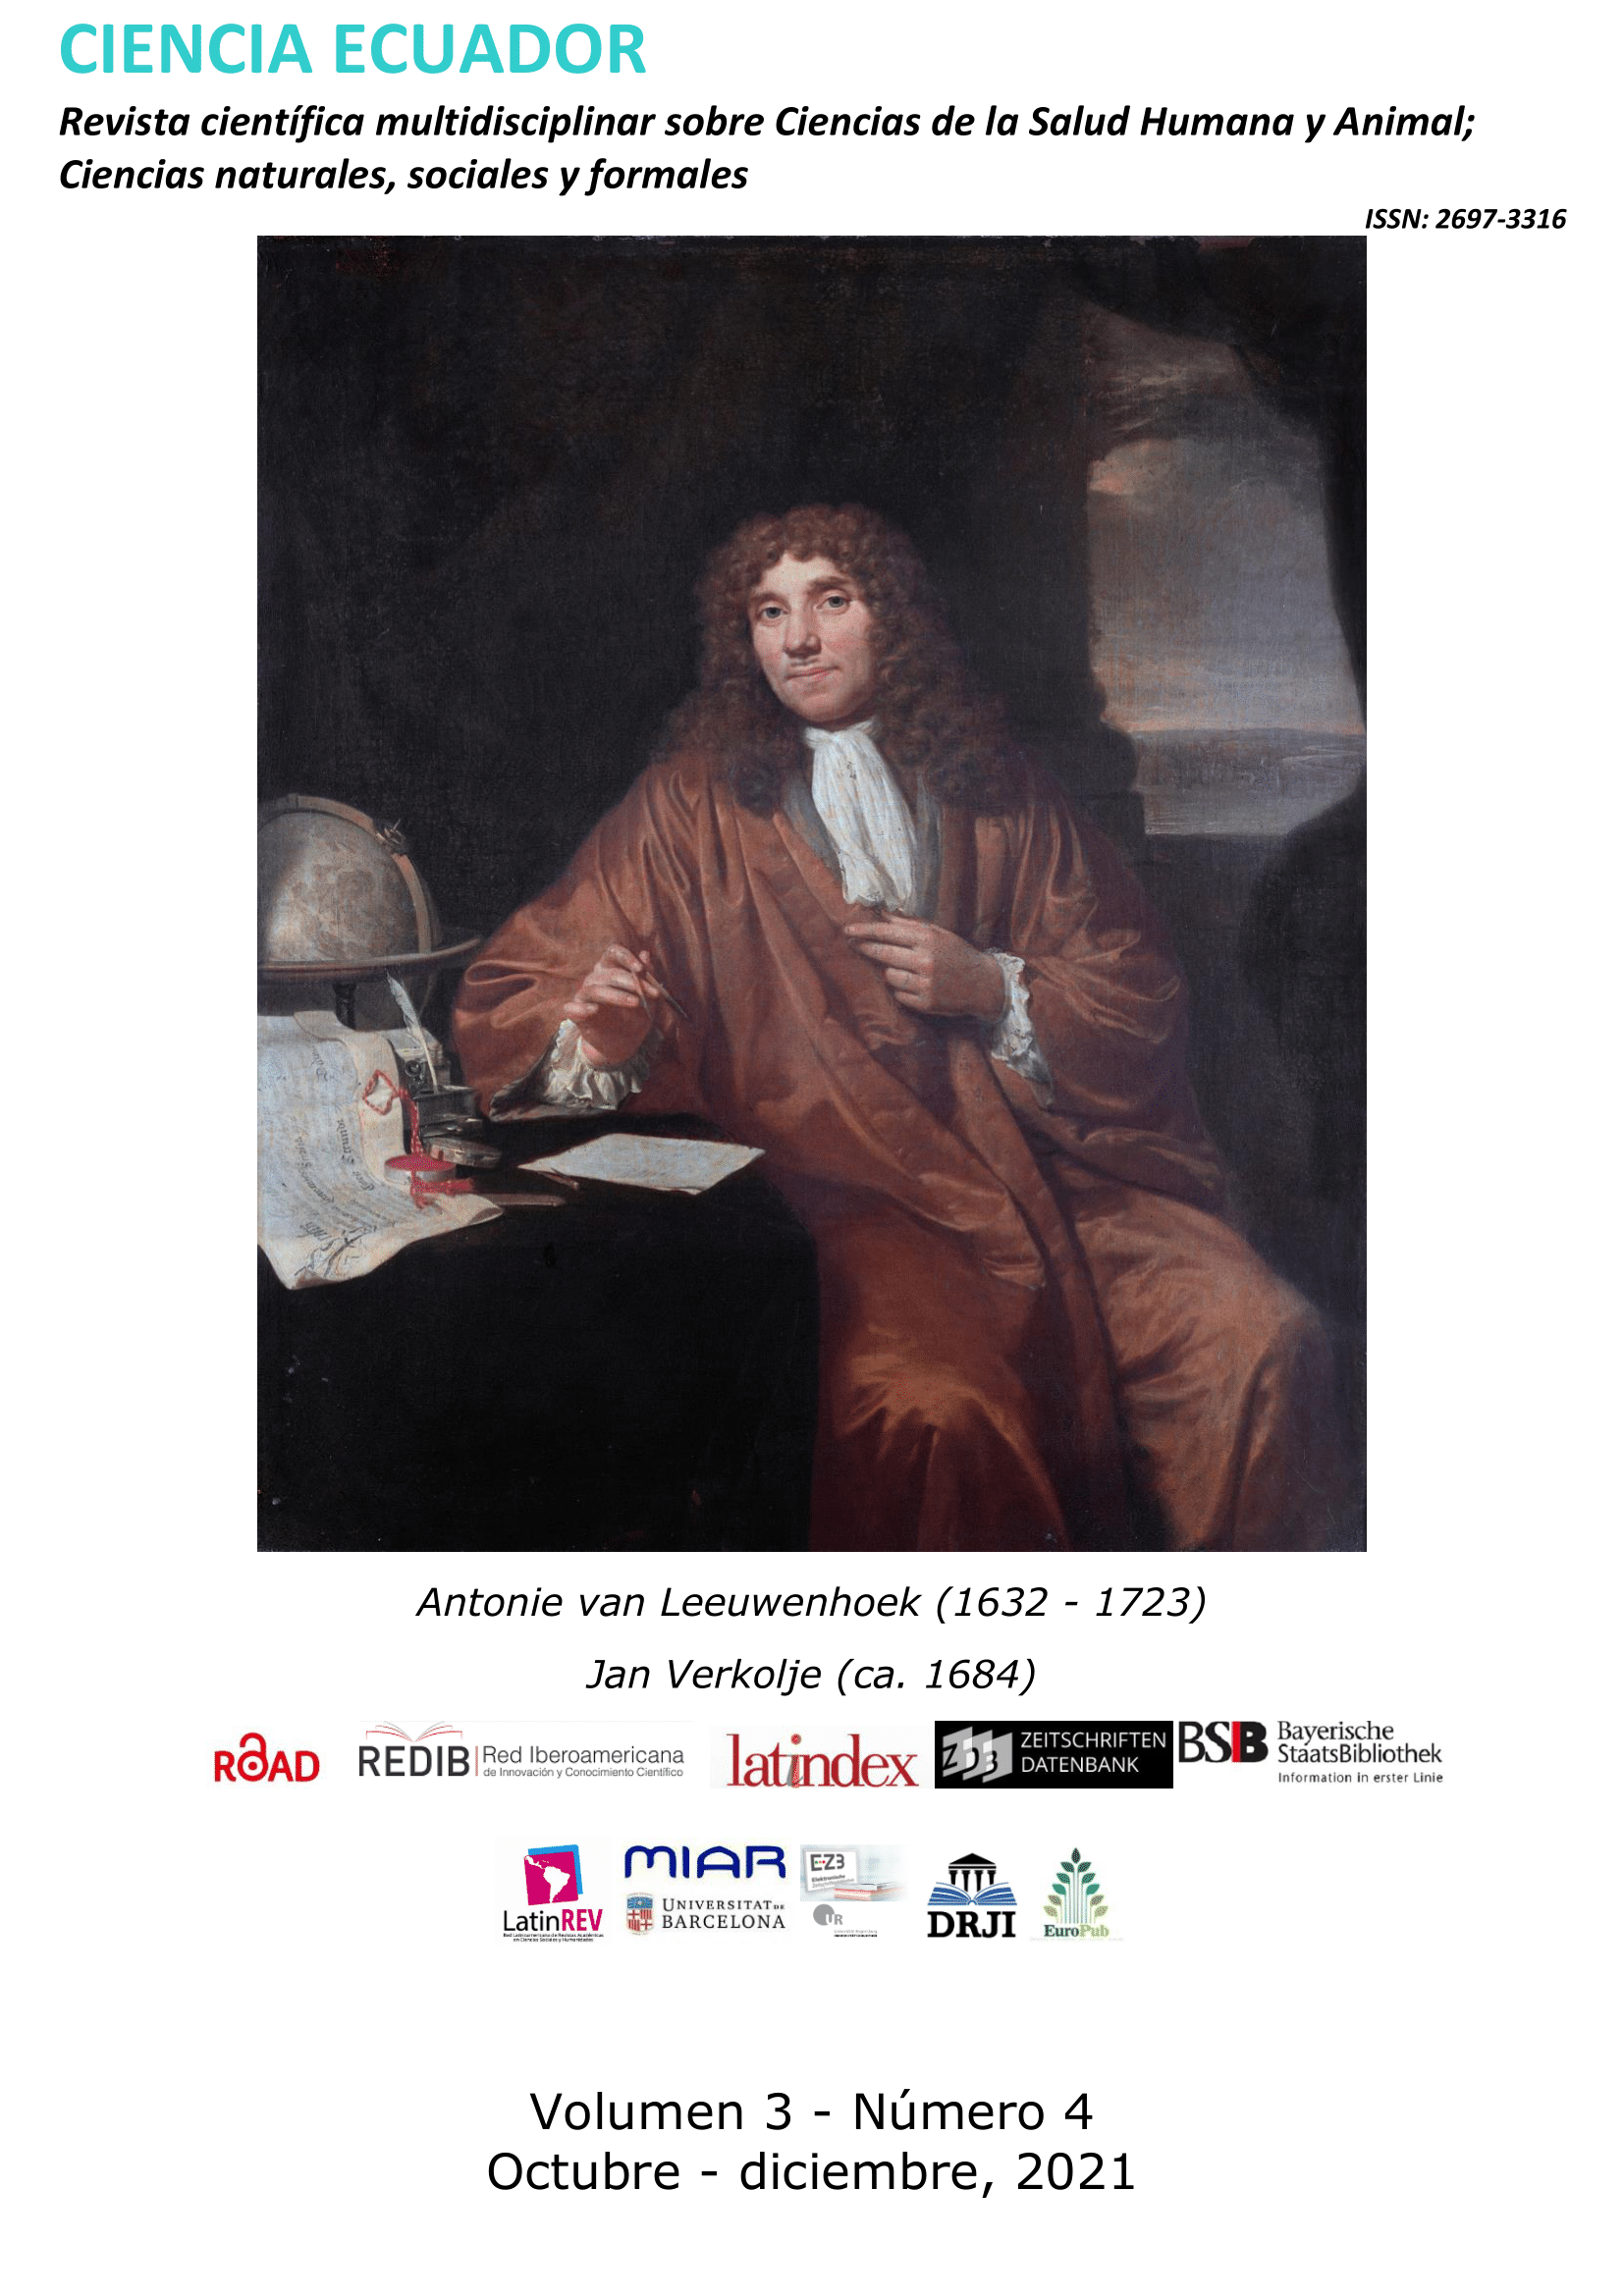 Antonie van Leeuwenhoek (1632 - 1723)